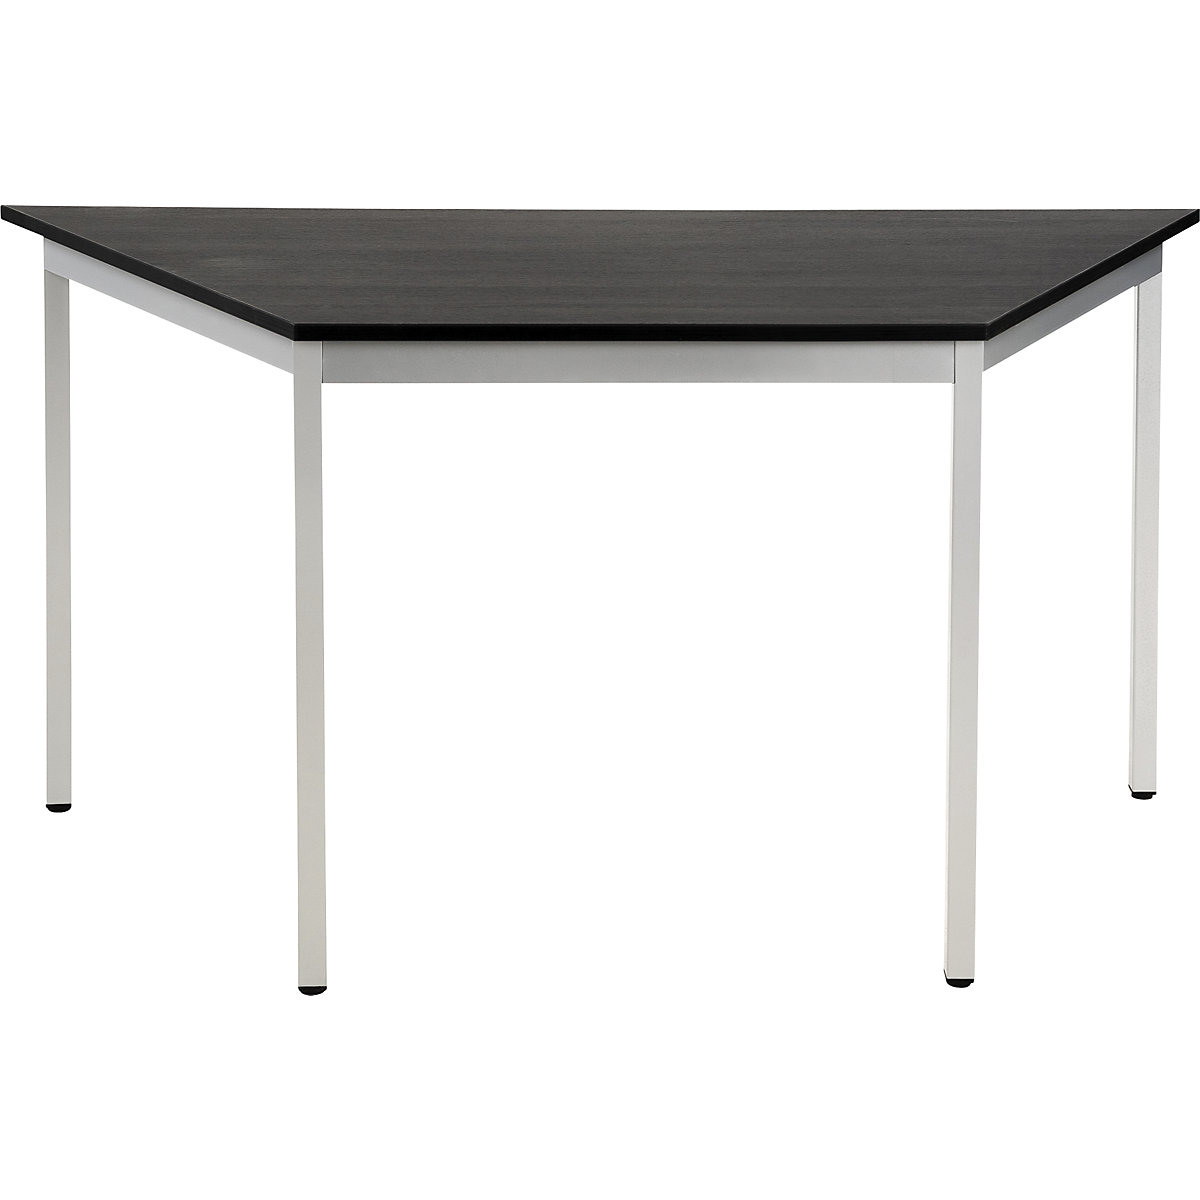 Večnamenska miza – eurokraft basic, trapezaste oblike, VxŠxG 740 x 1400 x 700 mm, plošča v imitaciji jesena temno sive barve, ogrodje aluminijasto bele barve-16